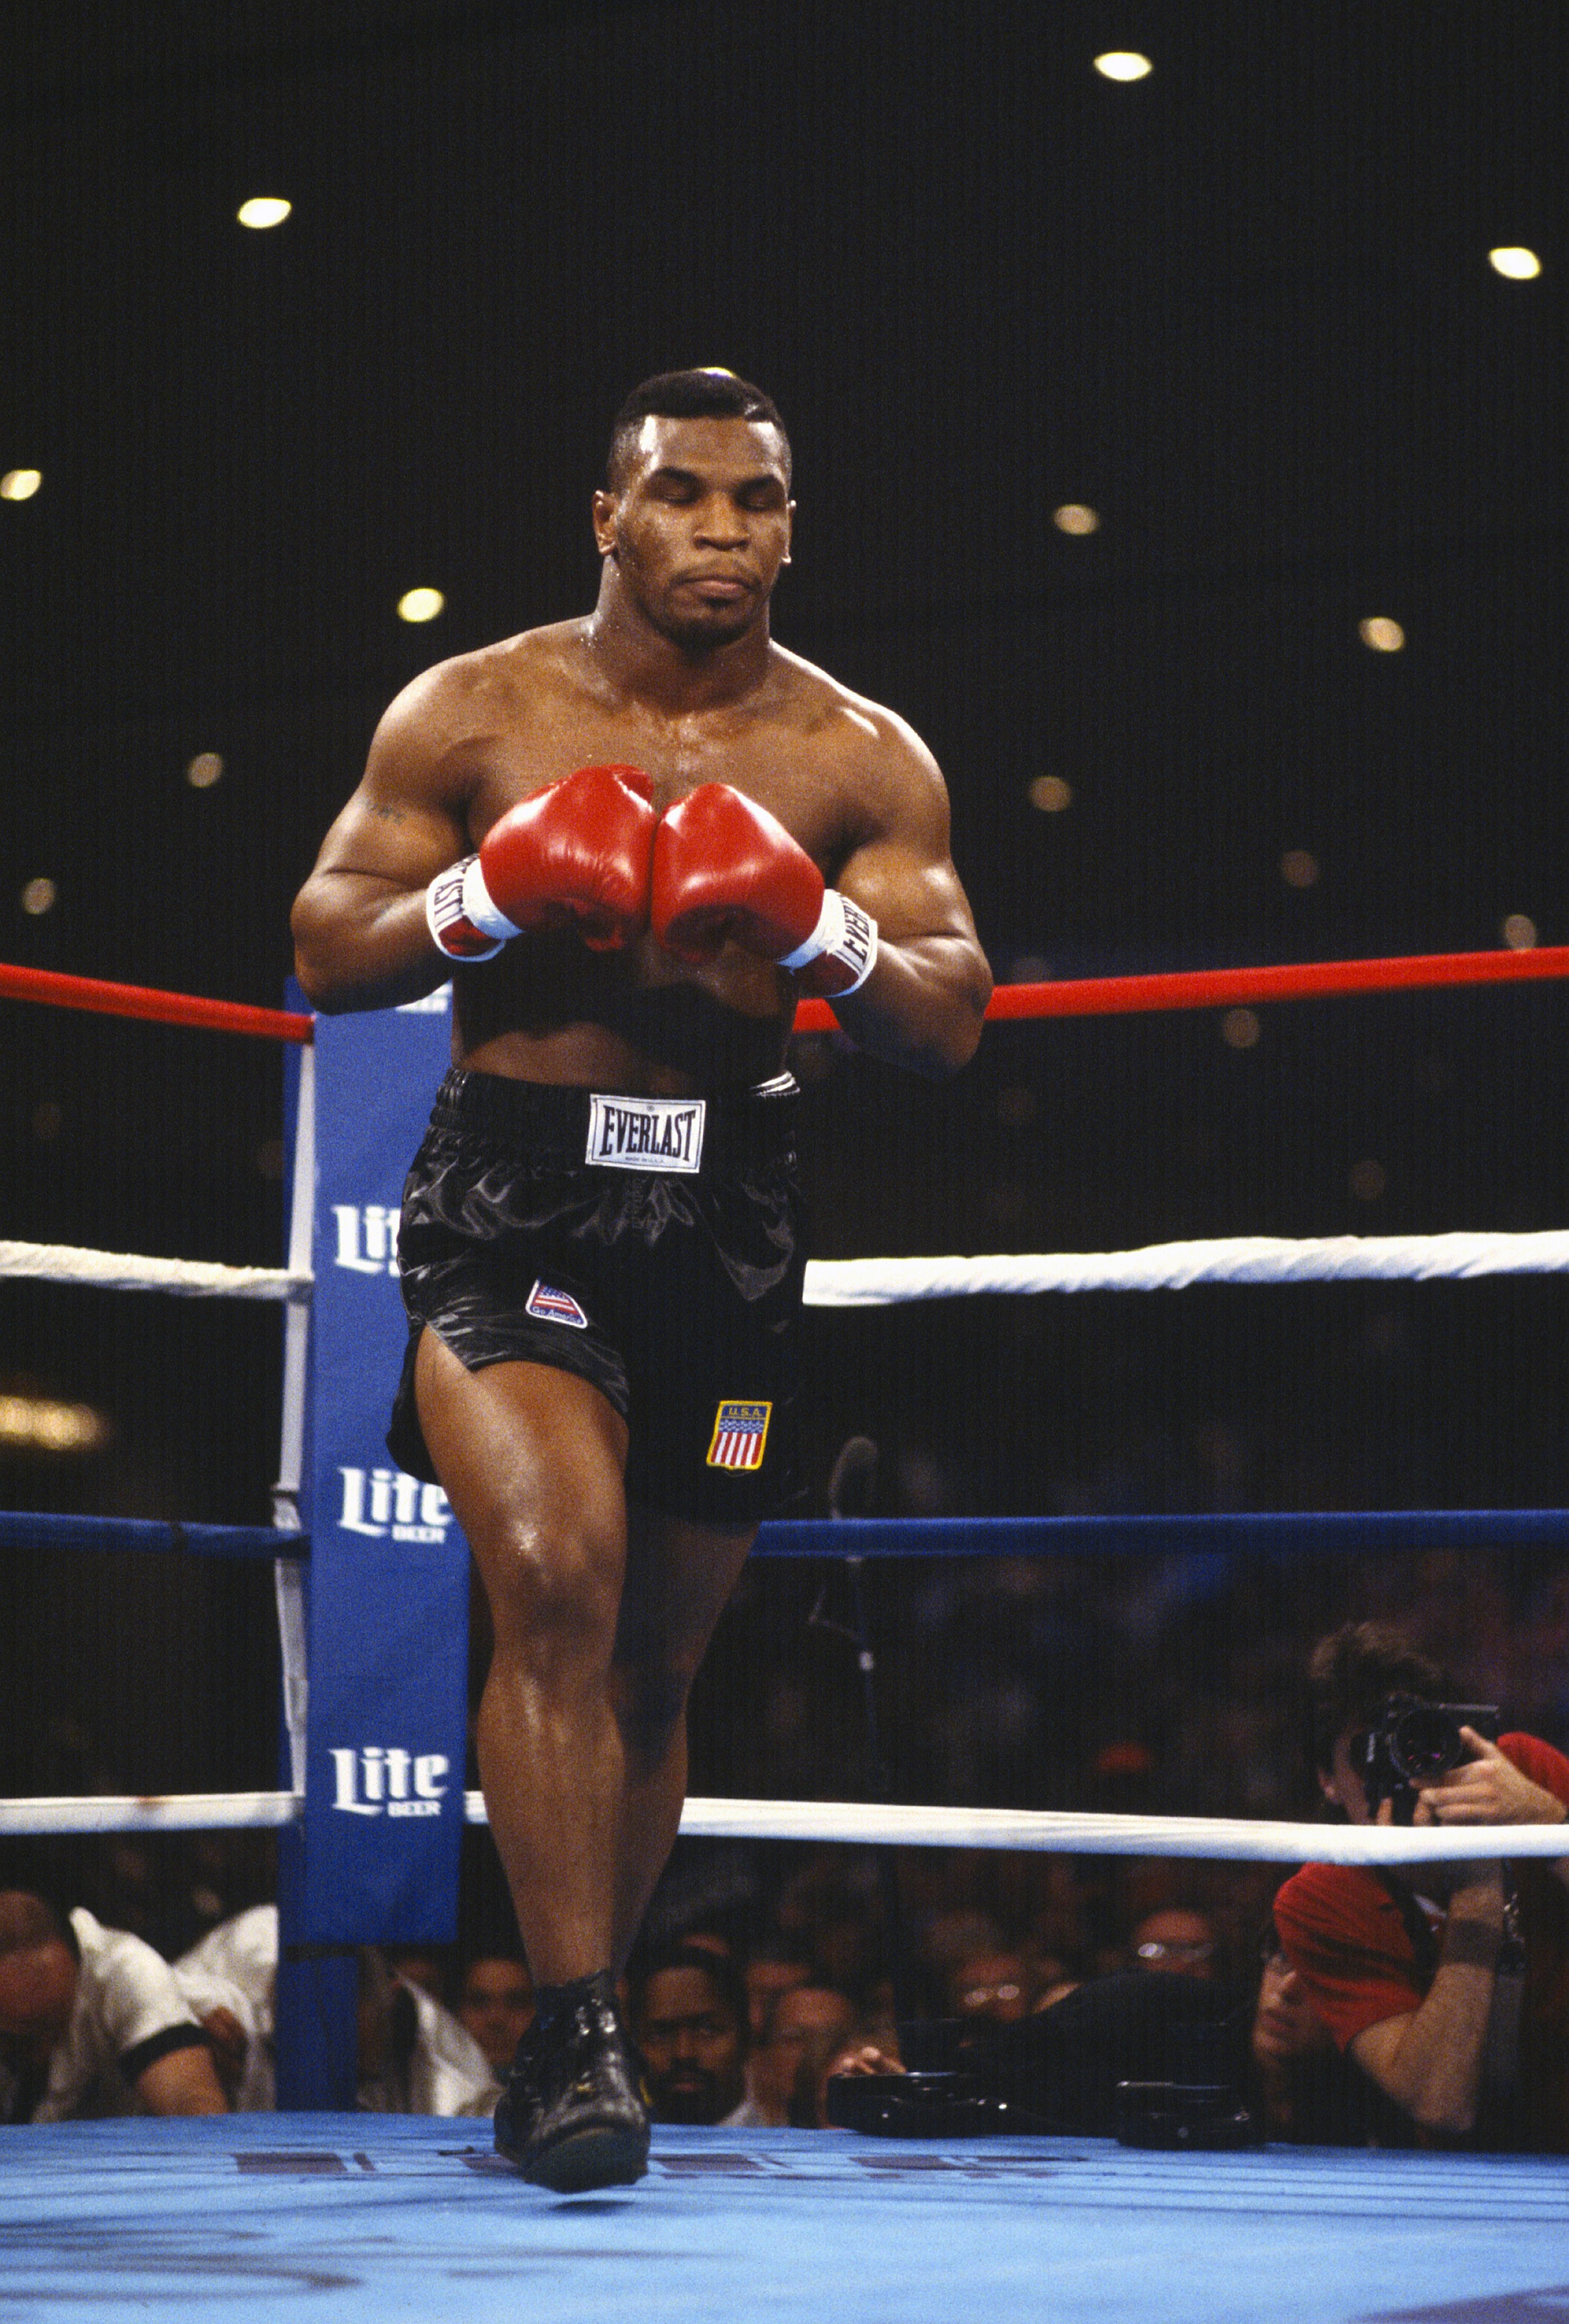 Mike Tyson na luta em que conquistou seu primeiro título mundial, contra Trevor Berbick, em novembro de 1986 (Foto: Getty Images)